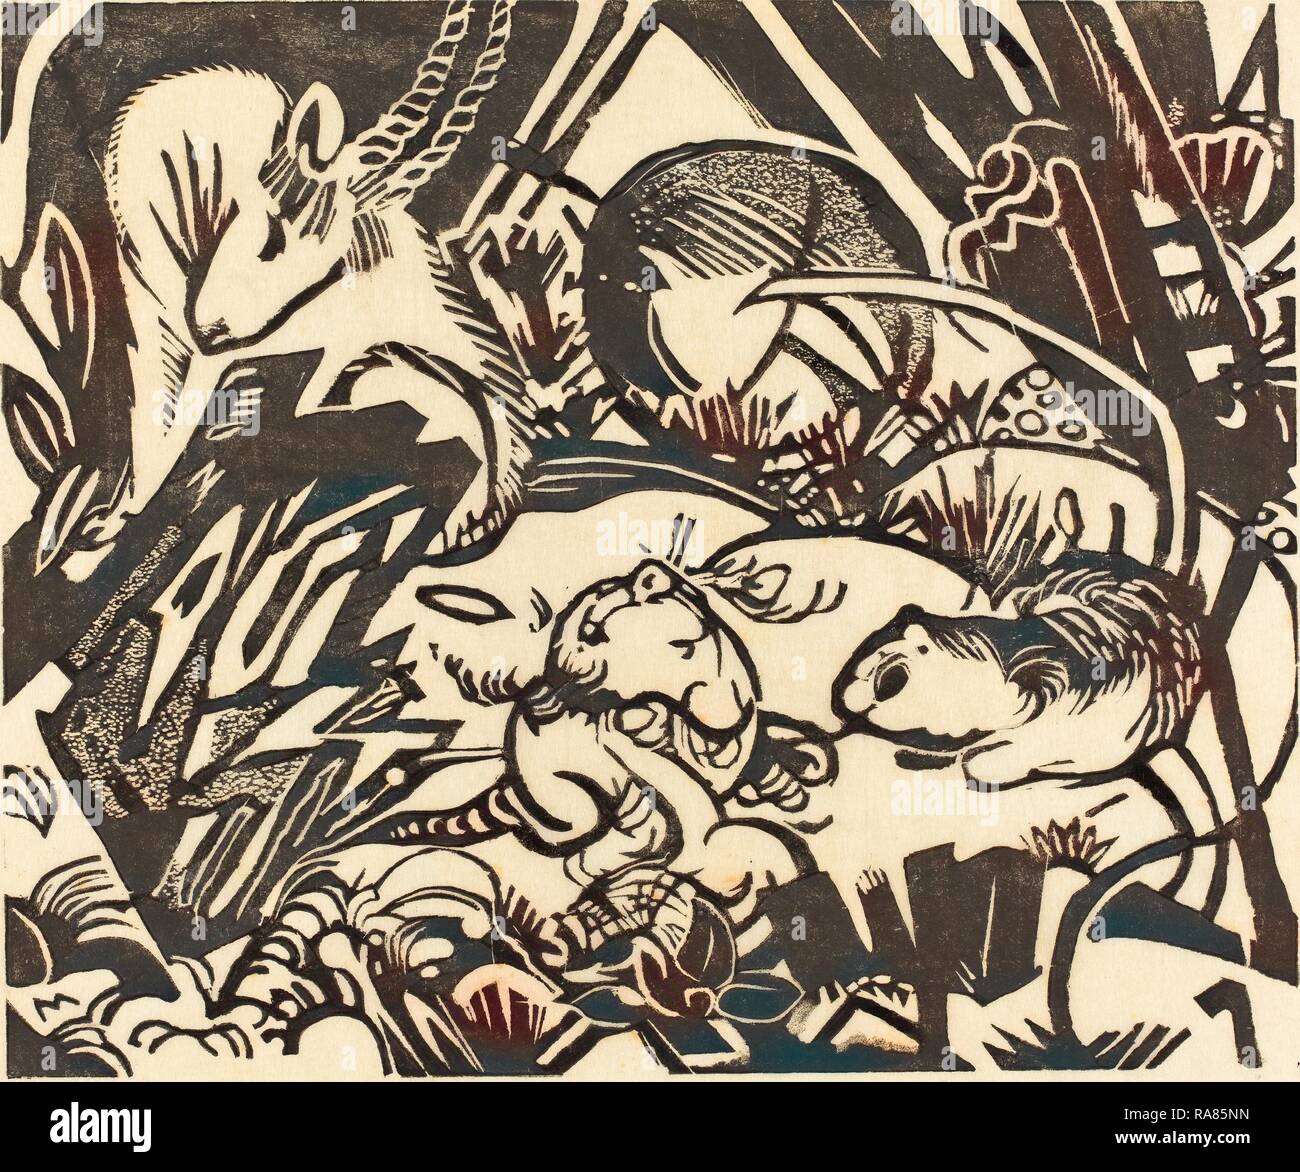 Franz Marc, Légende des animaux (Tierlegende), allemand, 1880 - 1916, 1912, xylographie sur papier Japon. Repensé Banque D'Images